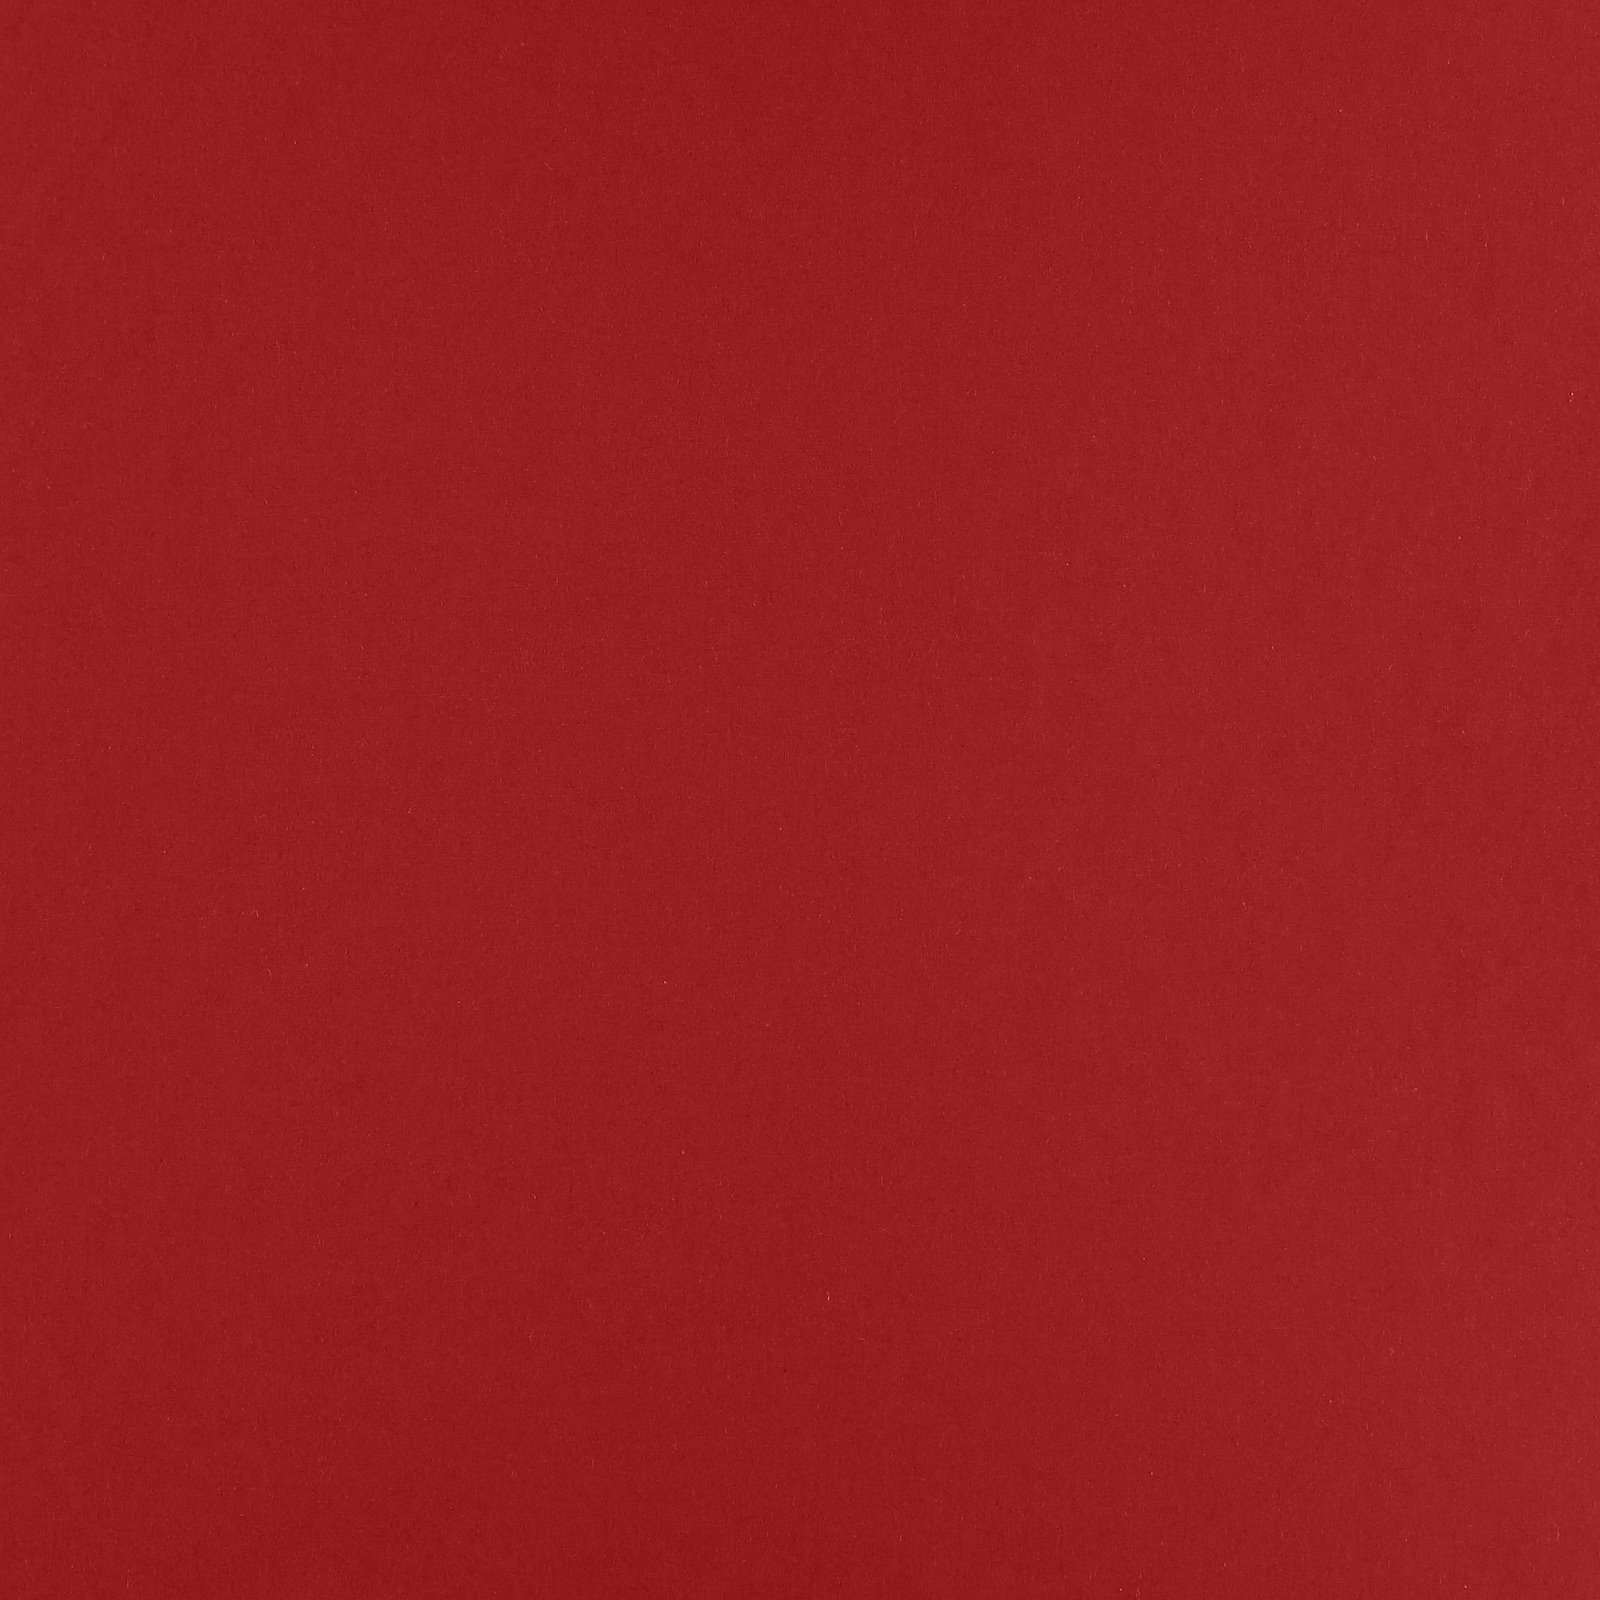 Vævet uld rød 300185_pack_solid